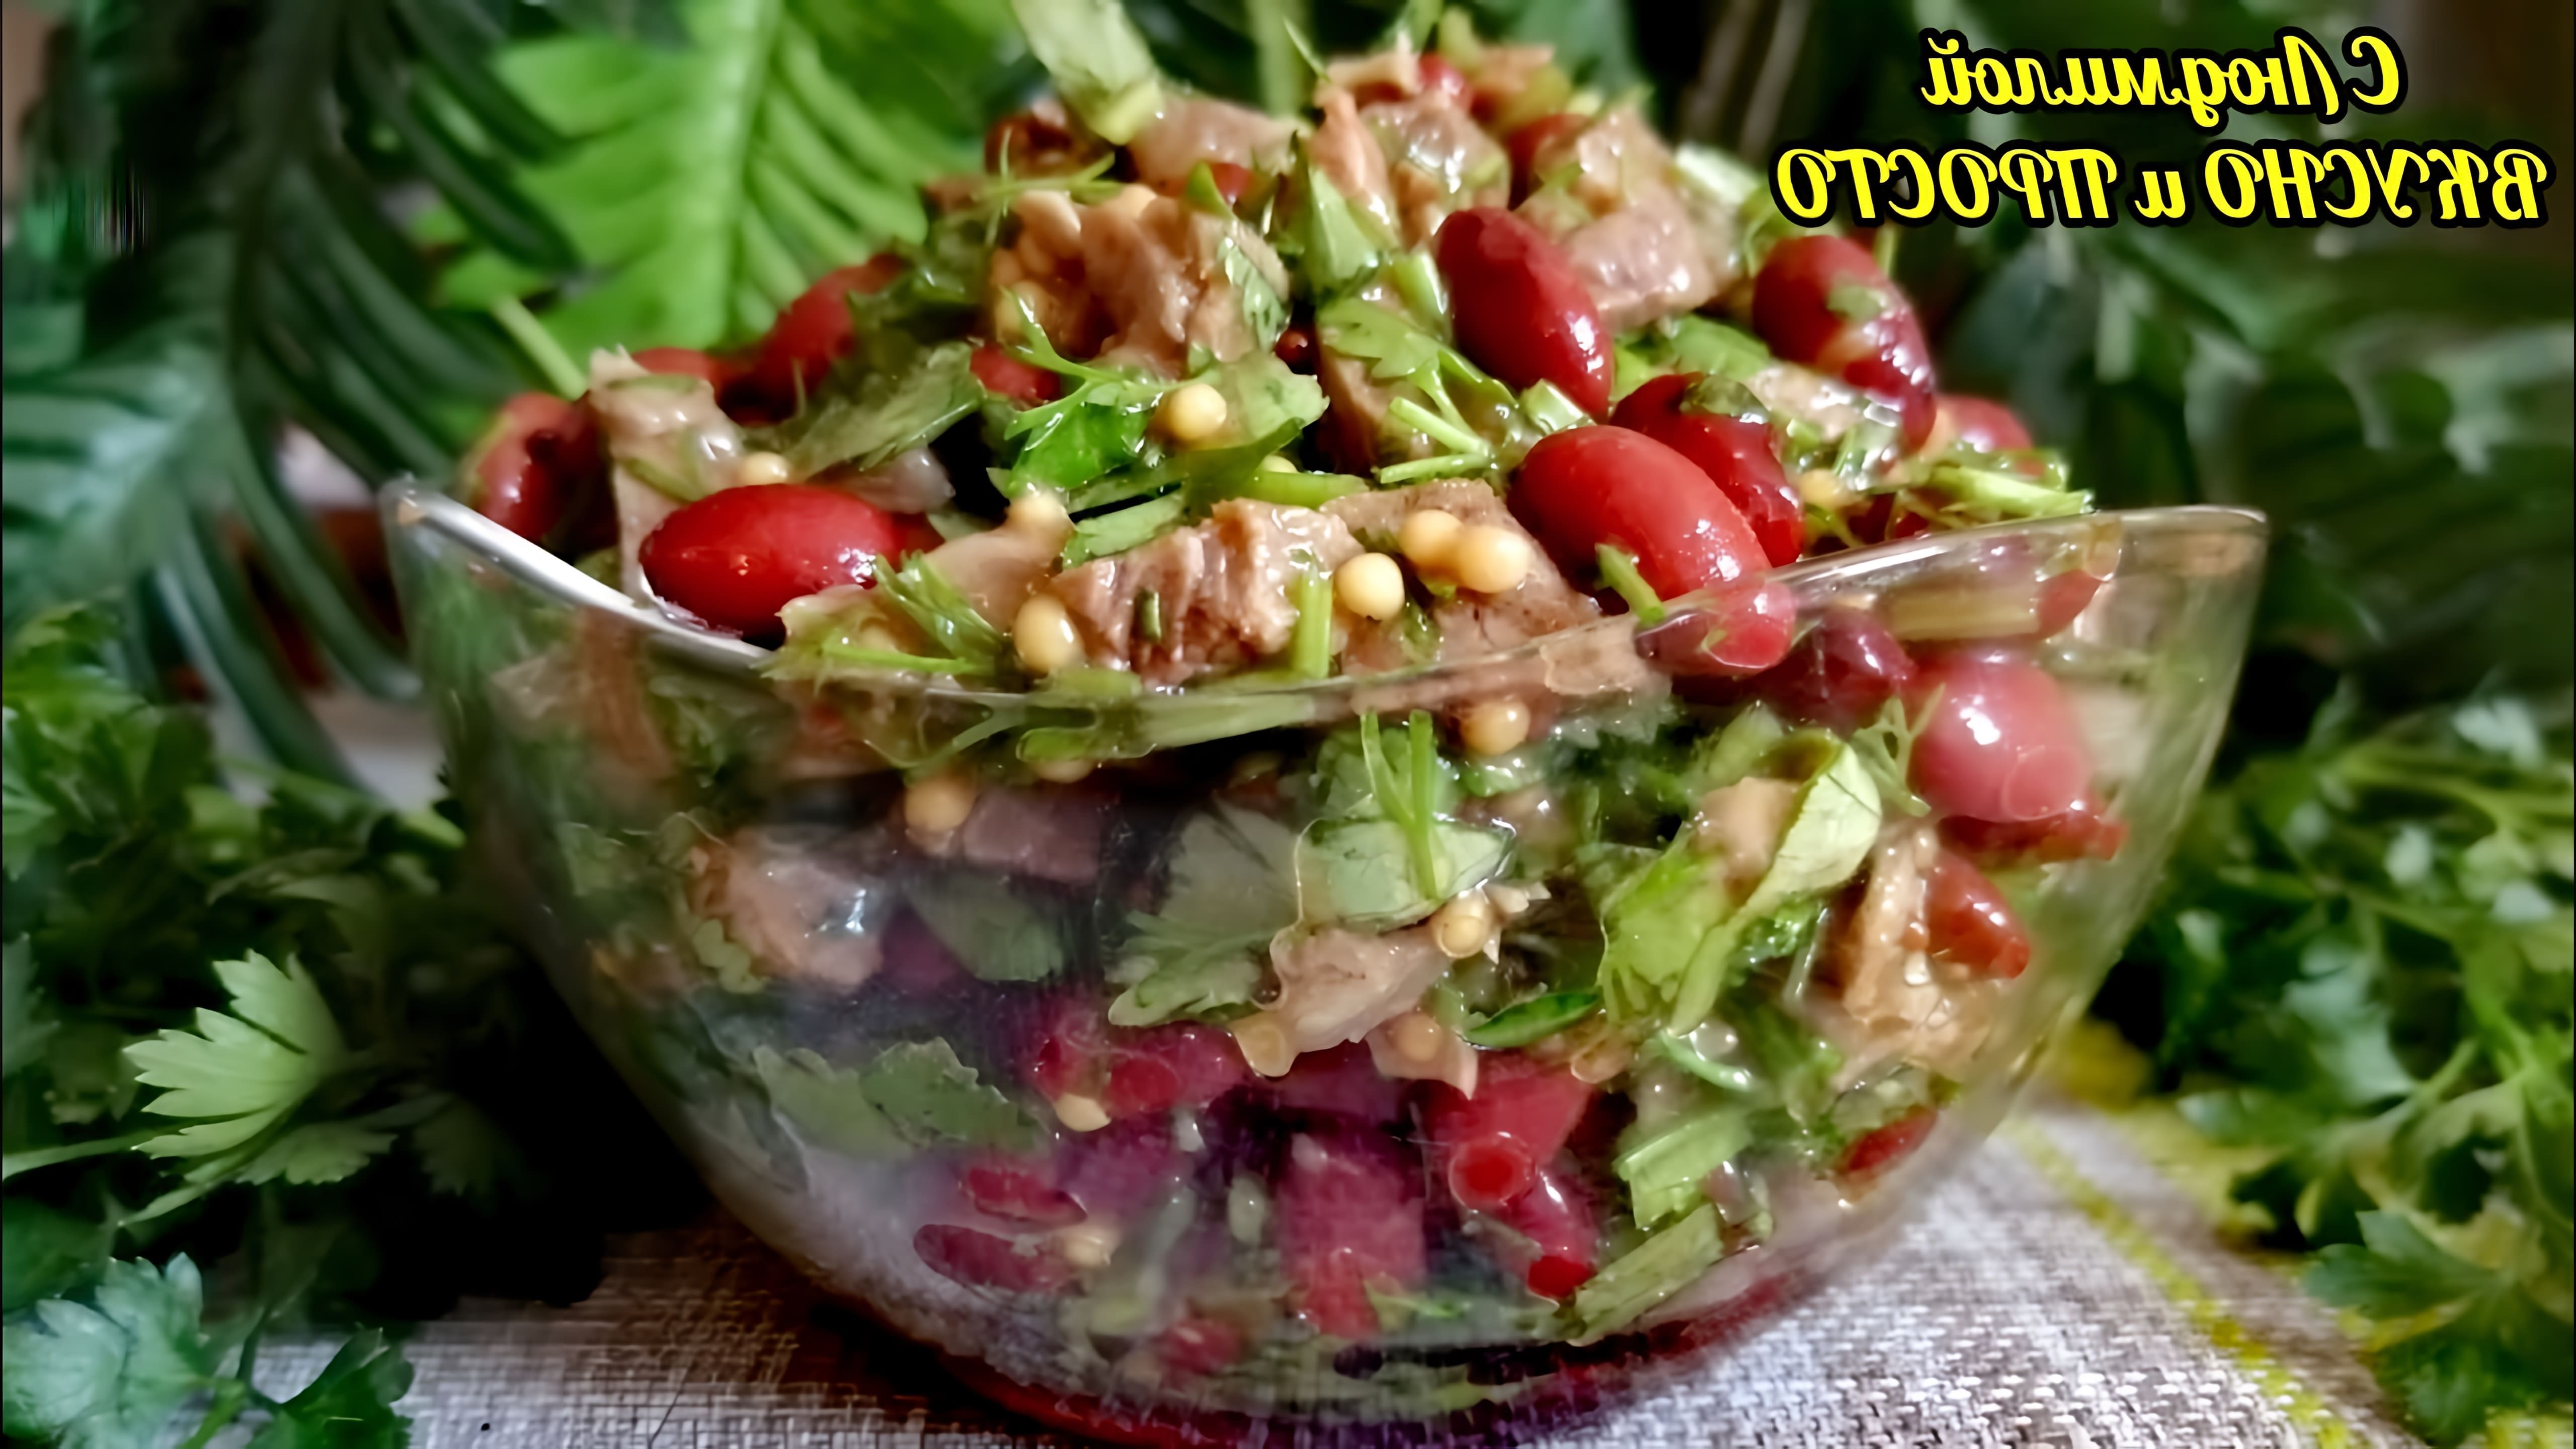 В этом видео демонстрируется рецепт простого салата с фасолью, мясом и зеленью